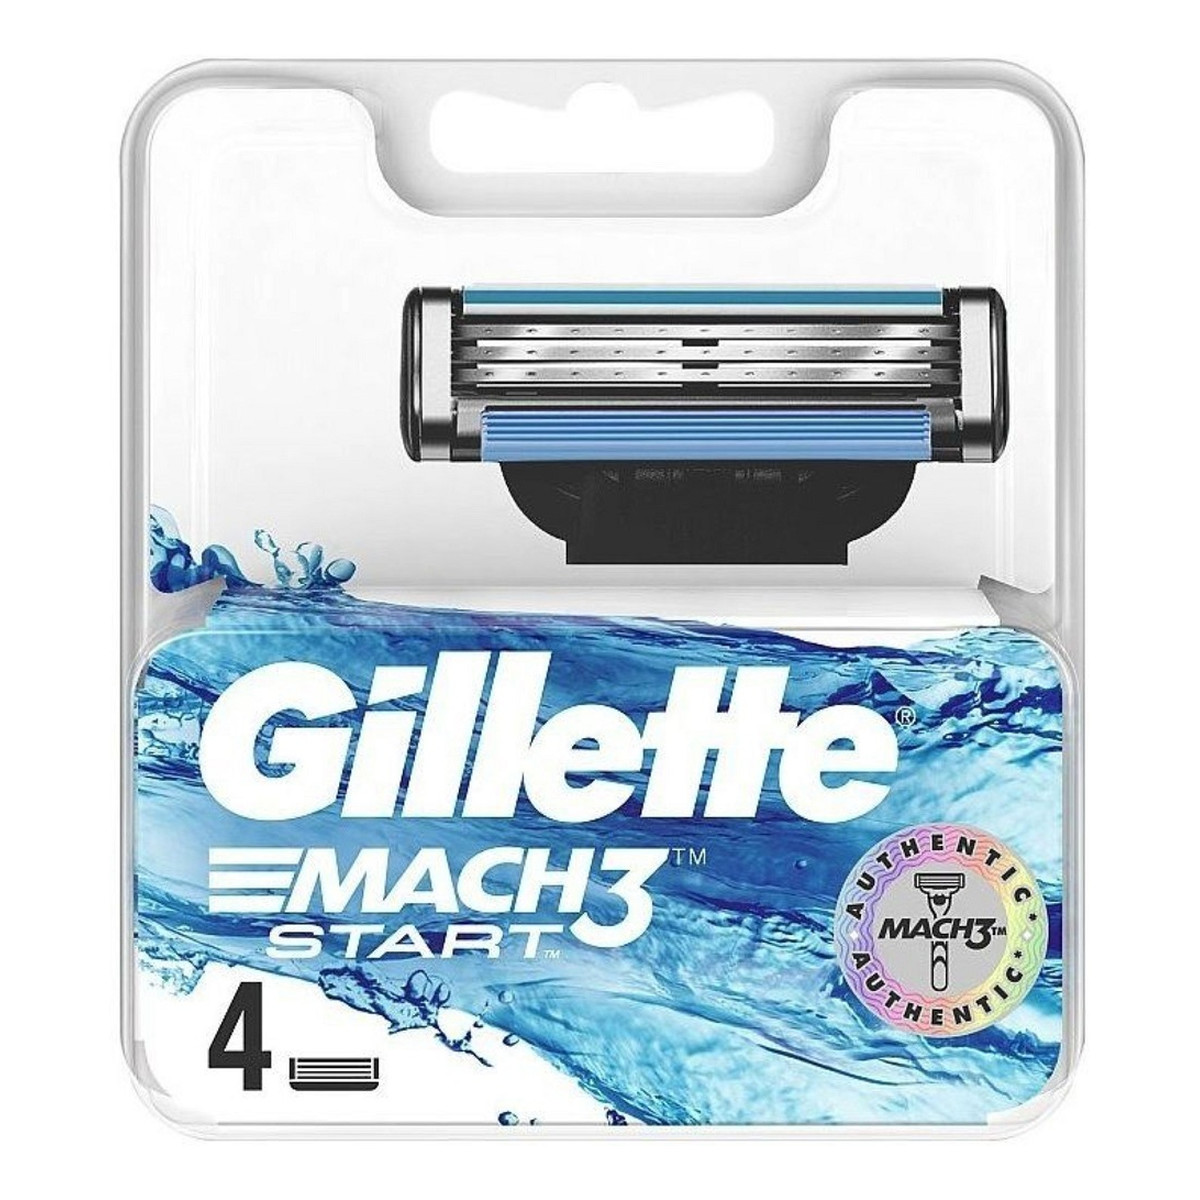 Gillette Mach3 start wymienne ostrza do maszynki do golenia 4szt